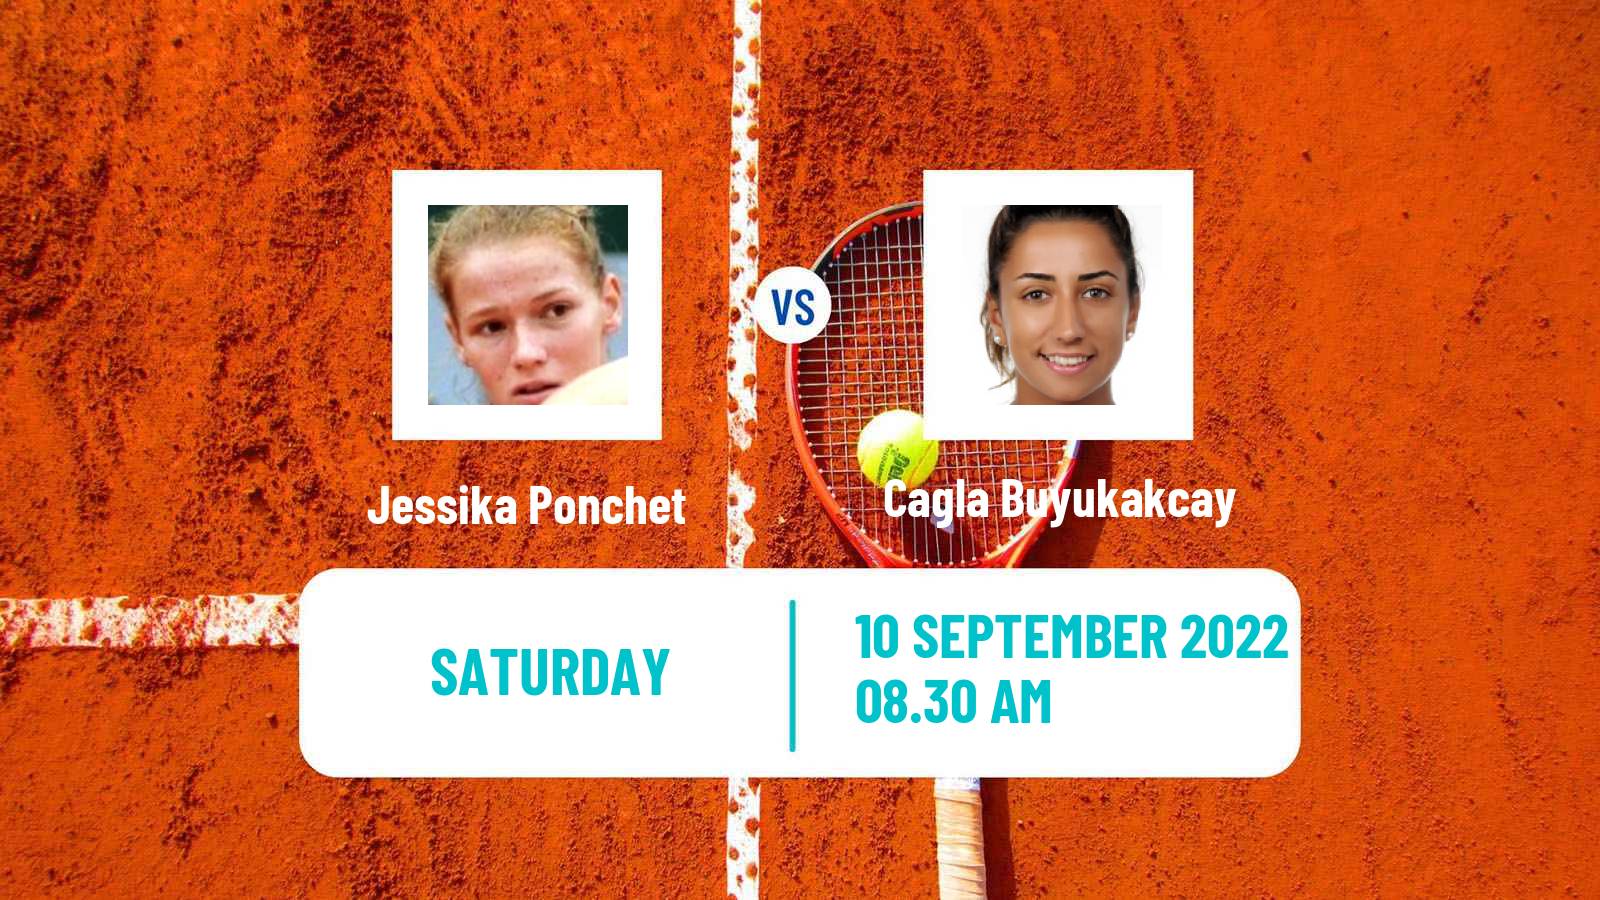 Tennis ITF Tournaments Jessika Ponchet - Cagla Buyukakcay